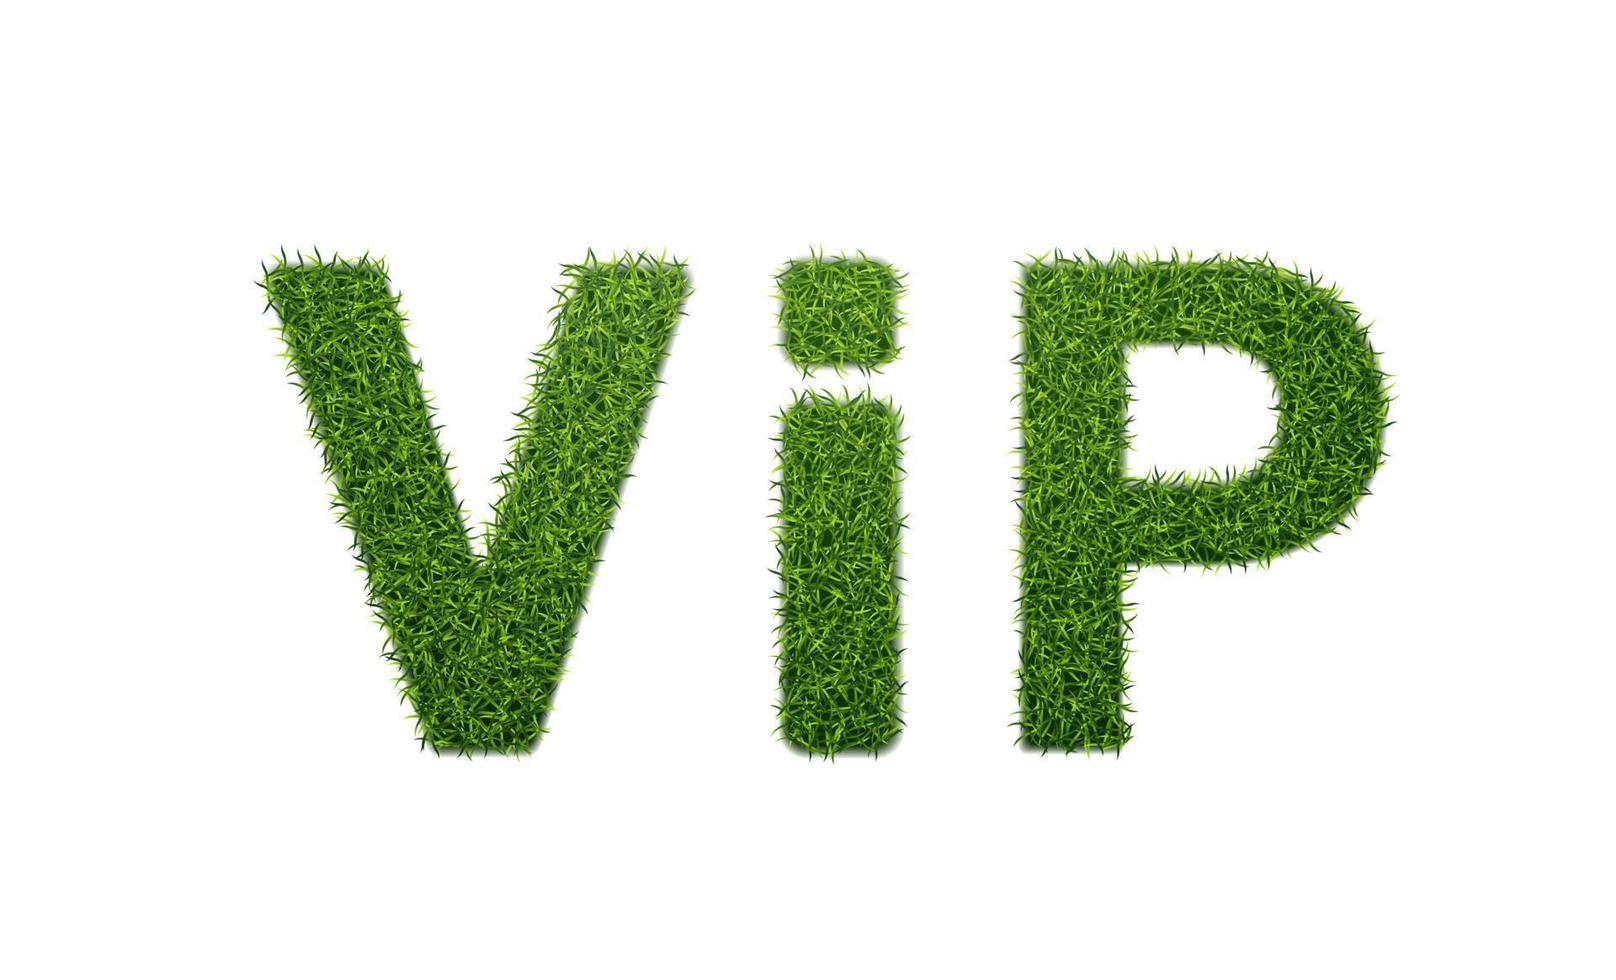 woord vip met gras textuur.groente lettertype. 3d realistisch stijl vector illustratie.